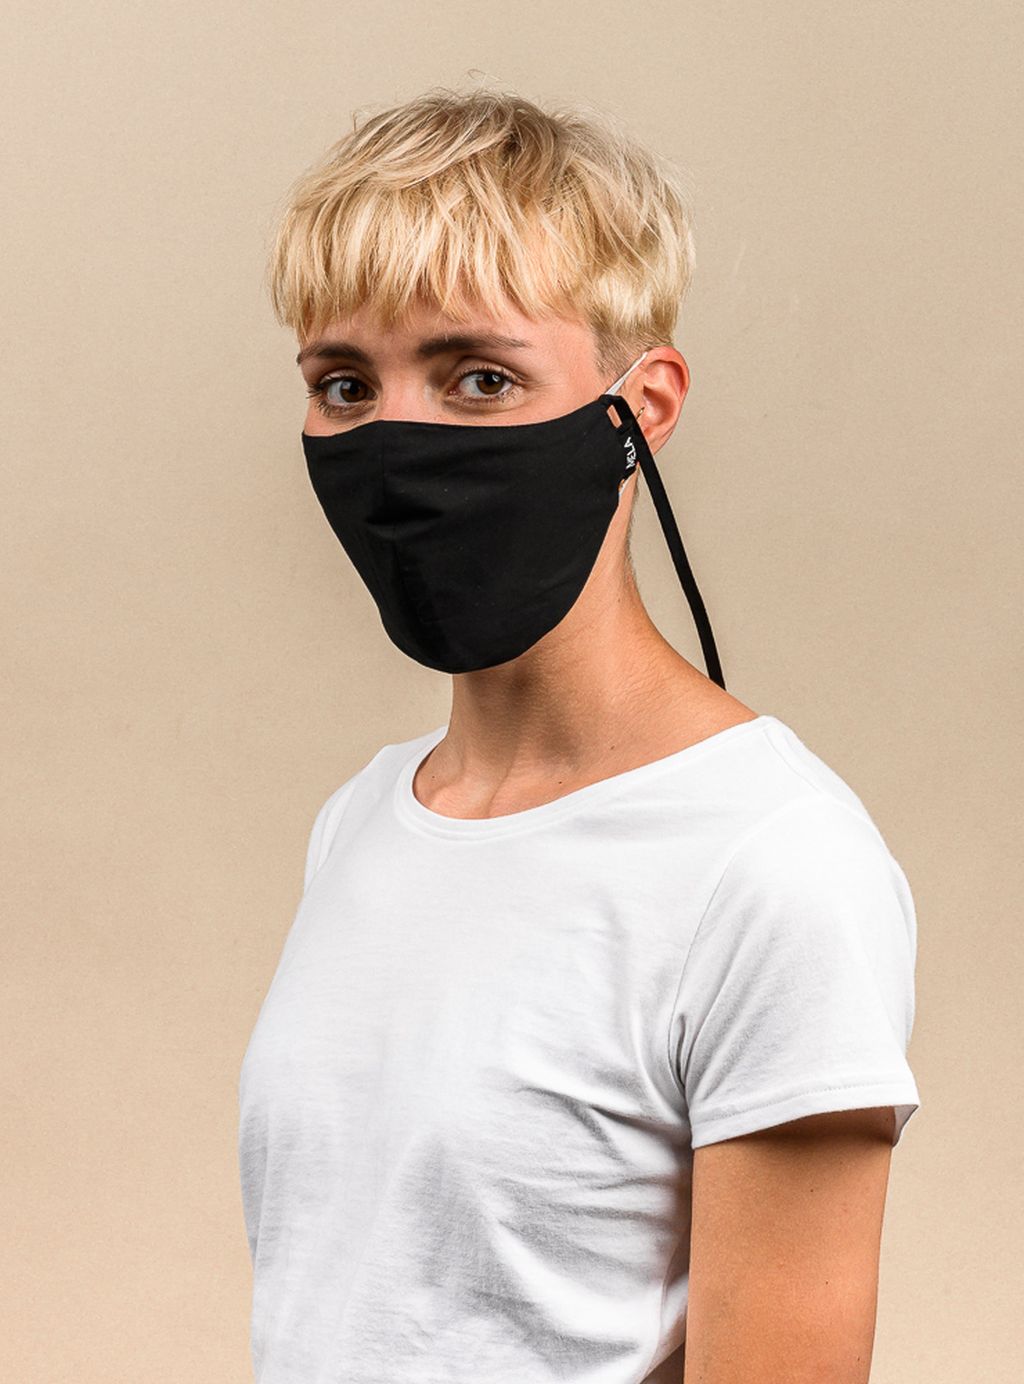 Behelfs-Mund-Nasen-Maske - Schadstofffrei, Unisex, Gots Zertifiziert - Black